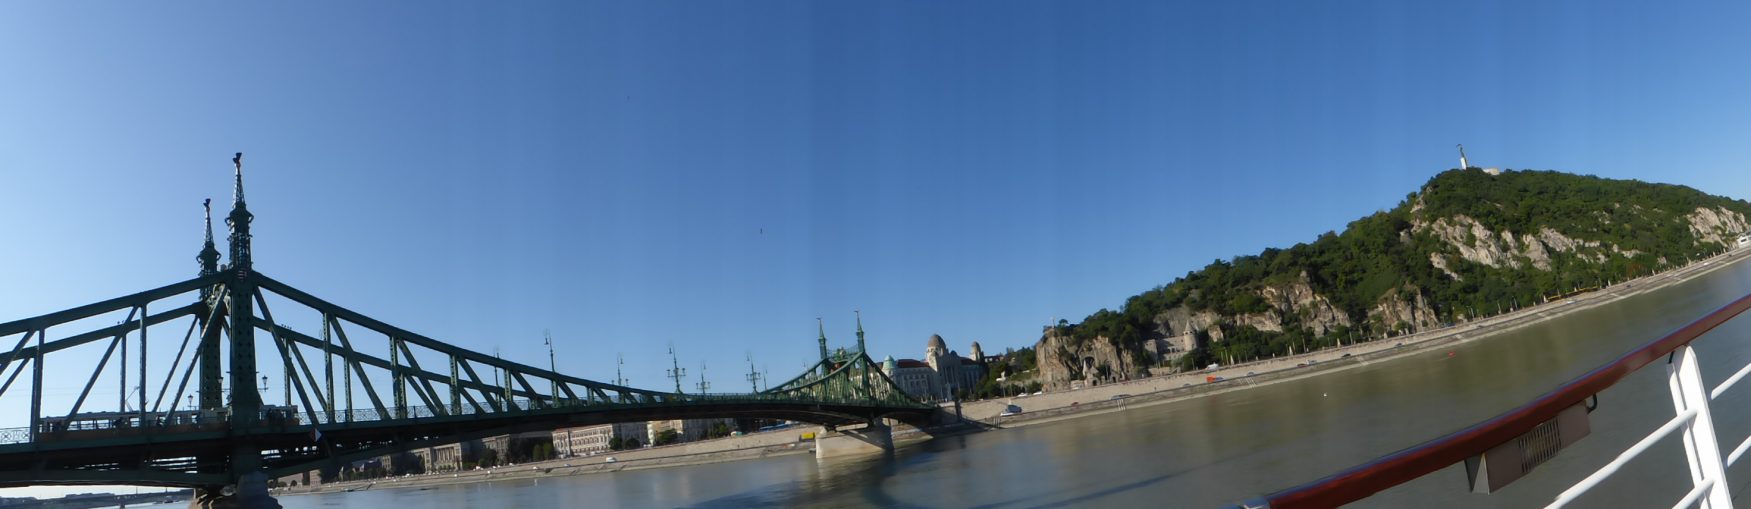 Die Kettenbrücke von Budapest, überspannt majestätisch die Donau. Foto: Weirauch